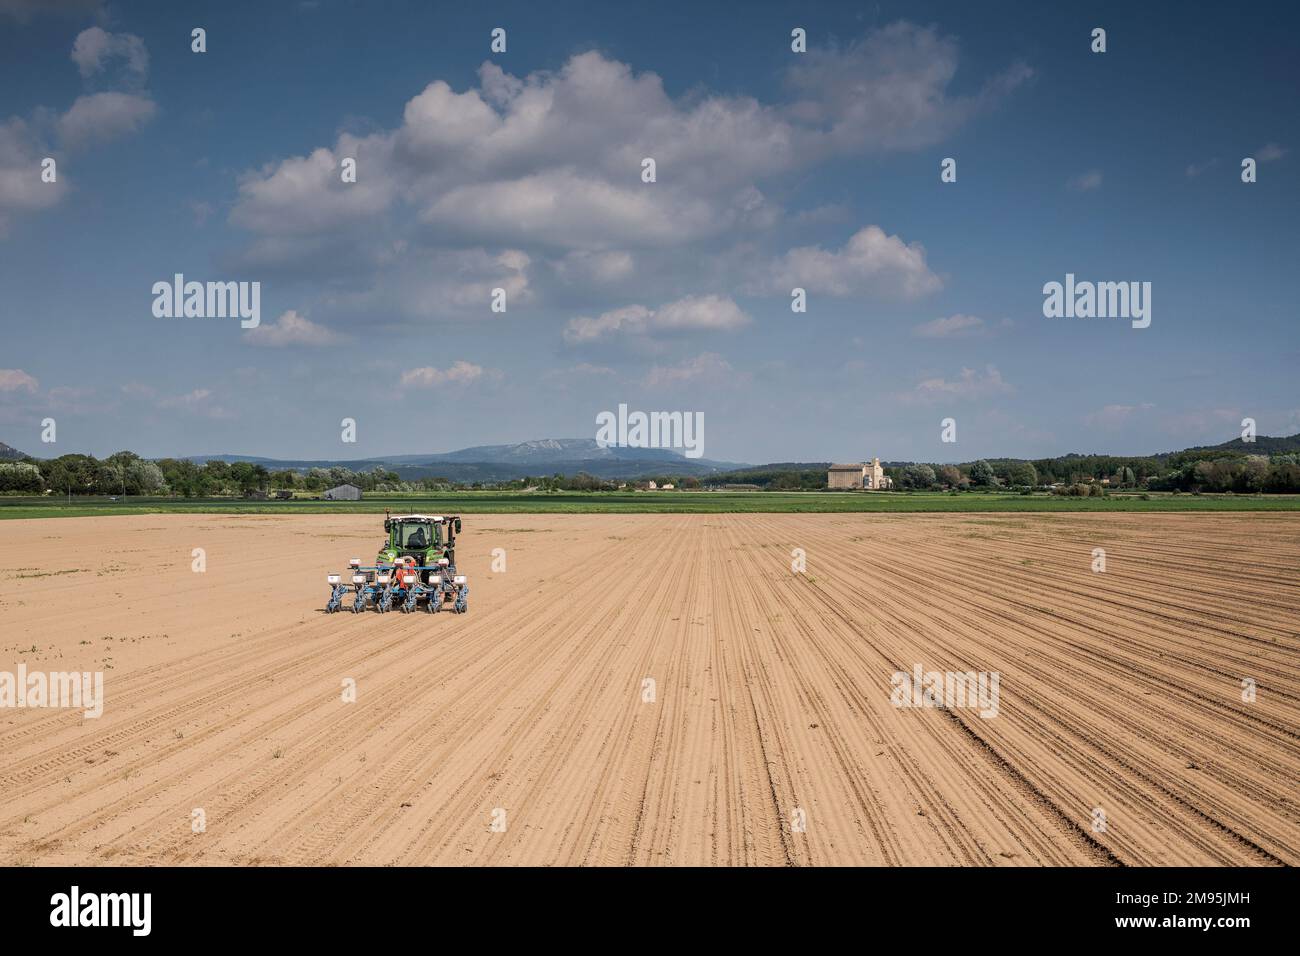 Pertuis (Südostfrankreich): Setzlinge auf einem Feld der landwirtschaftlichen Ebene von Pertuis, Traktor mit Sämaschine auf einem gepflügten Land Stockfoto